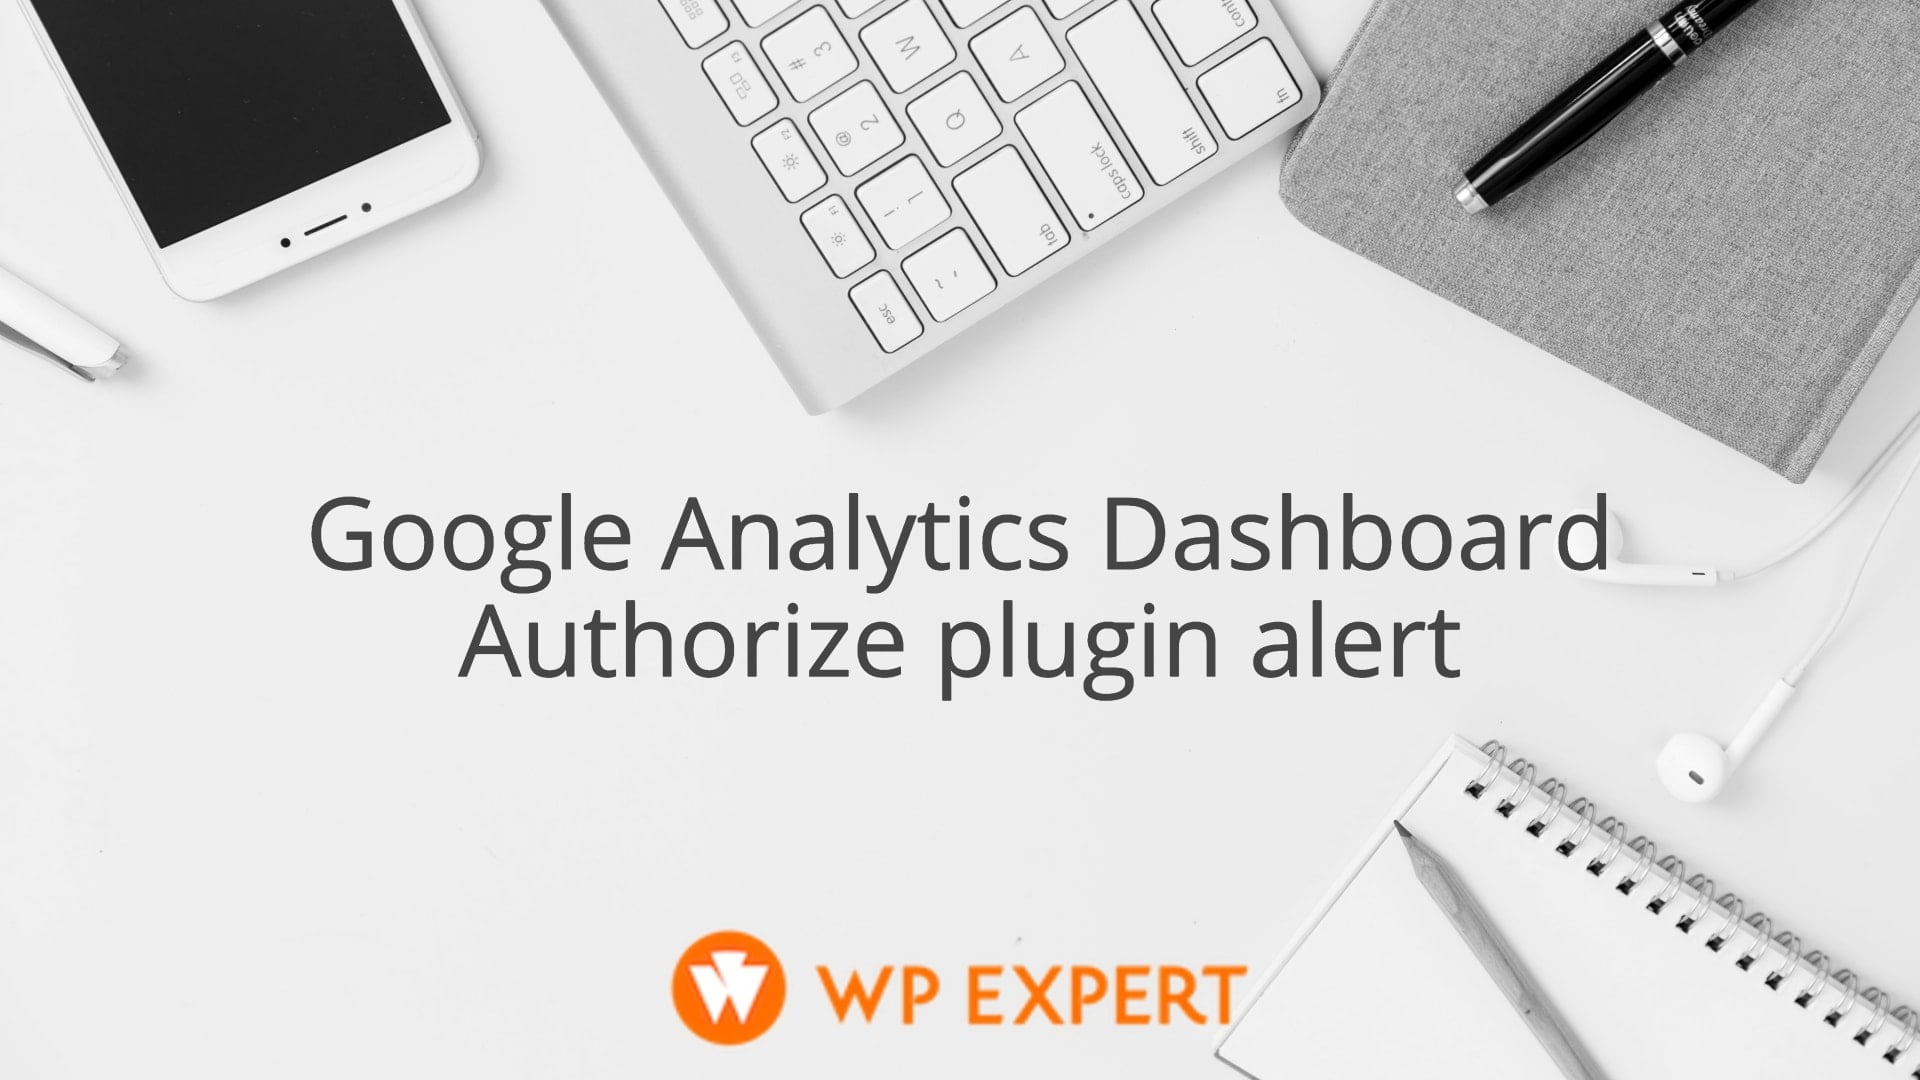 Google Analytics Dashboard - Authorize plugin alert